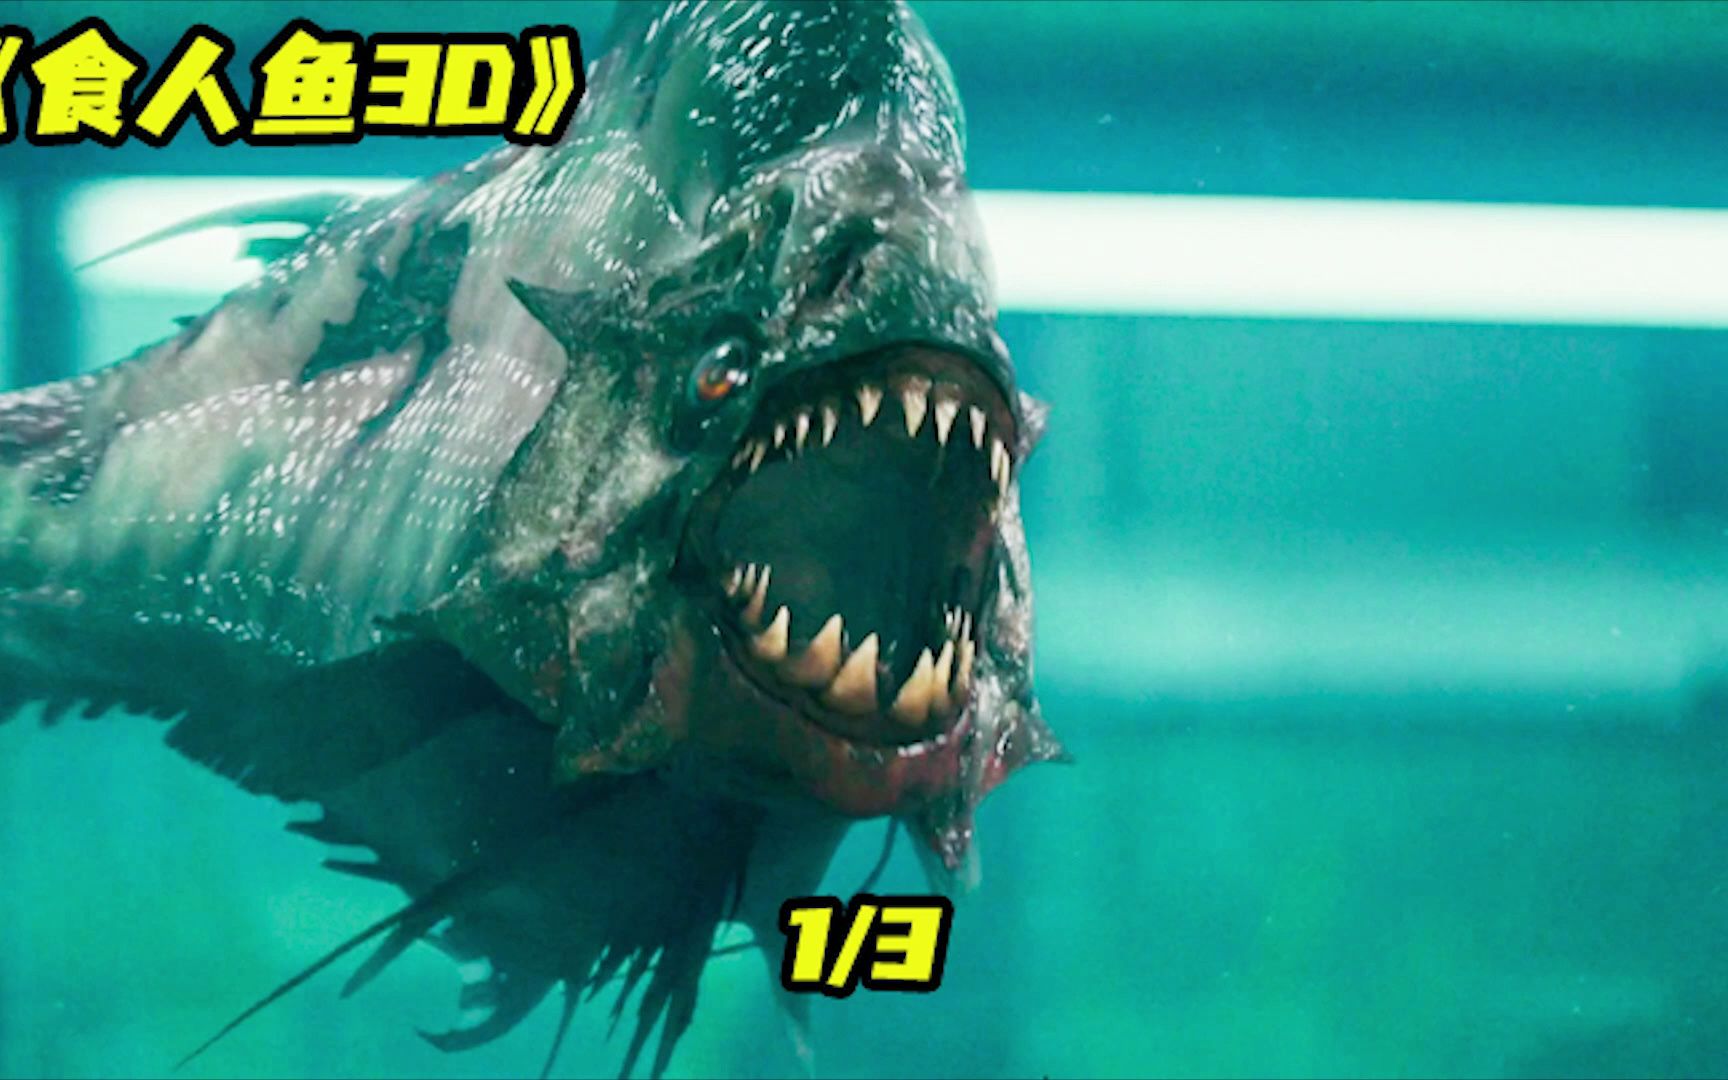 《食人鱼3d》男孩钓鱼时引出巨大漩涡,竟惊动了沉睡万年的食人鱼